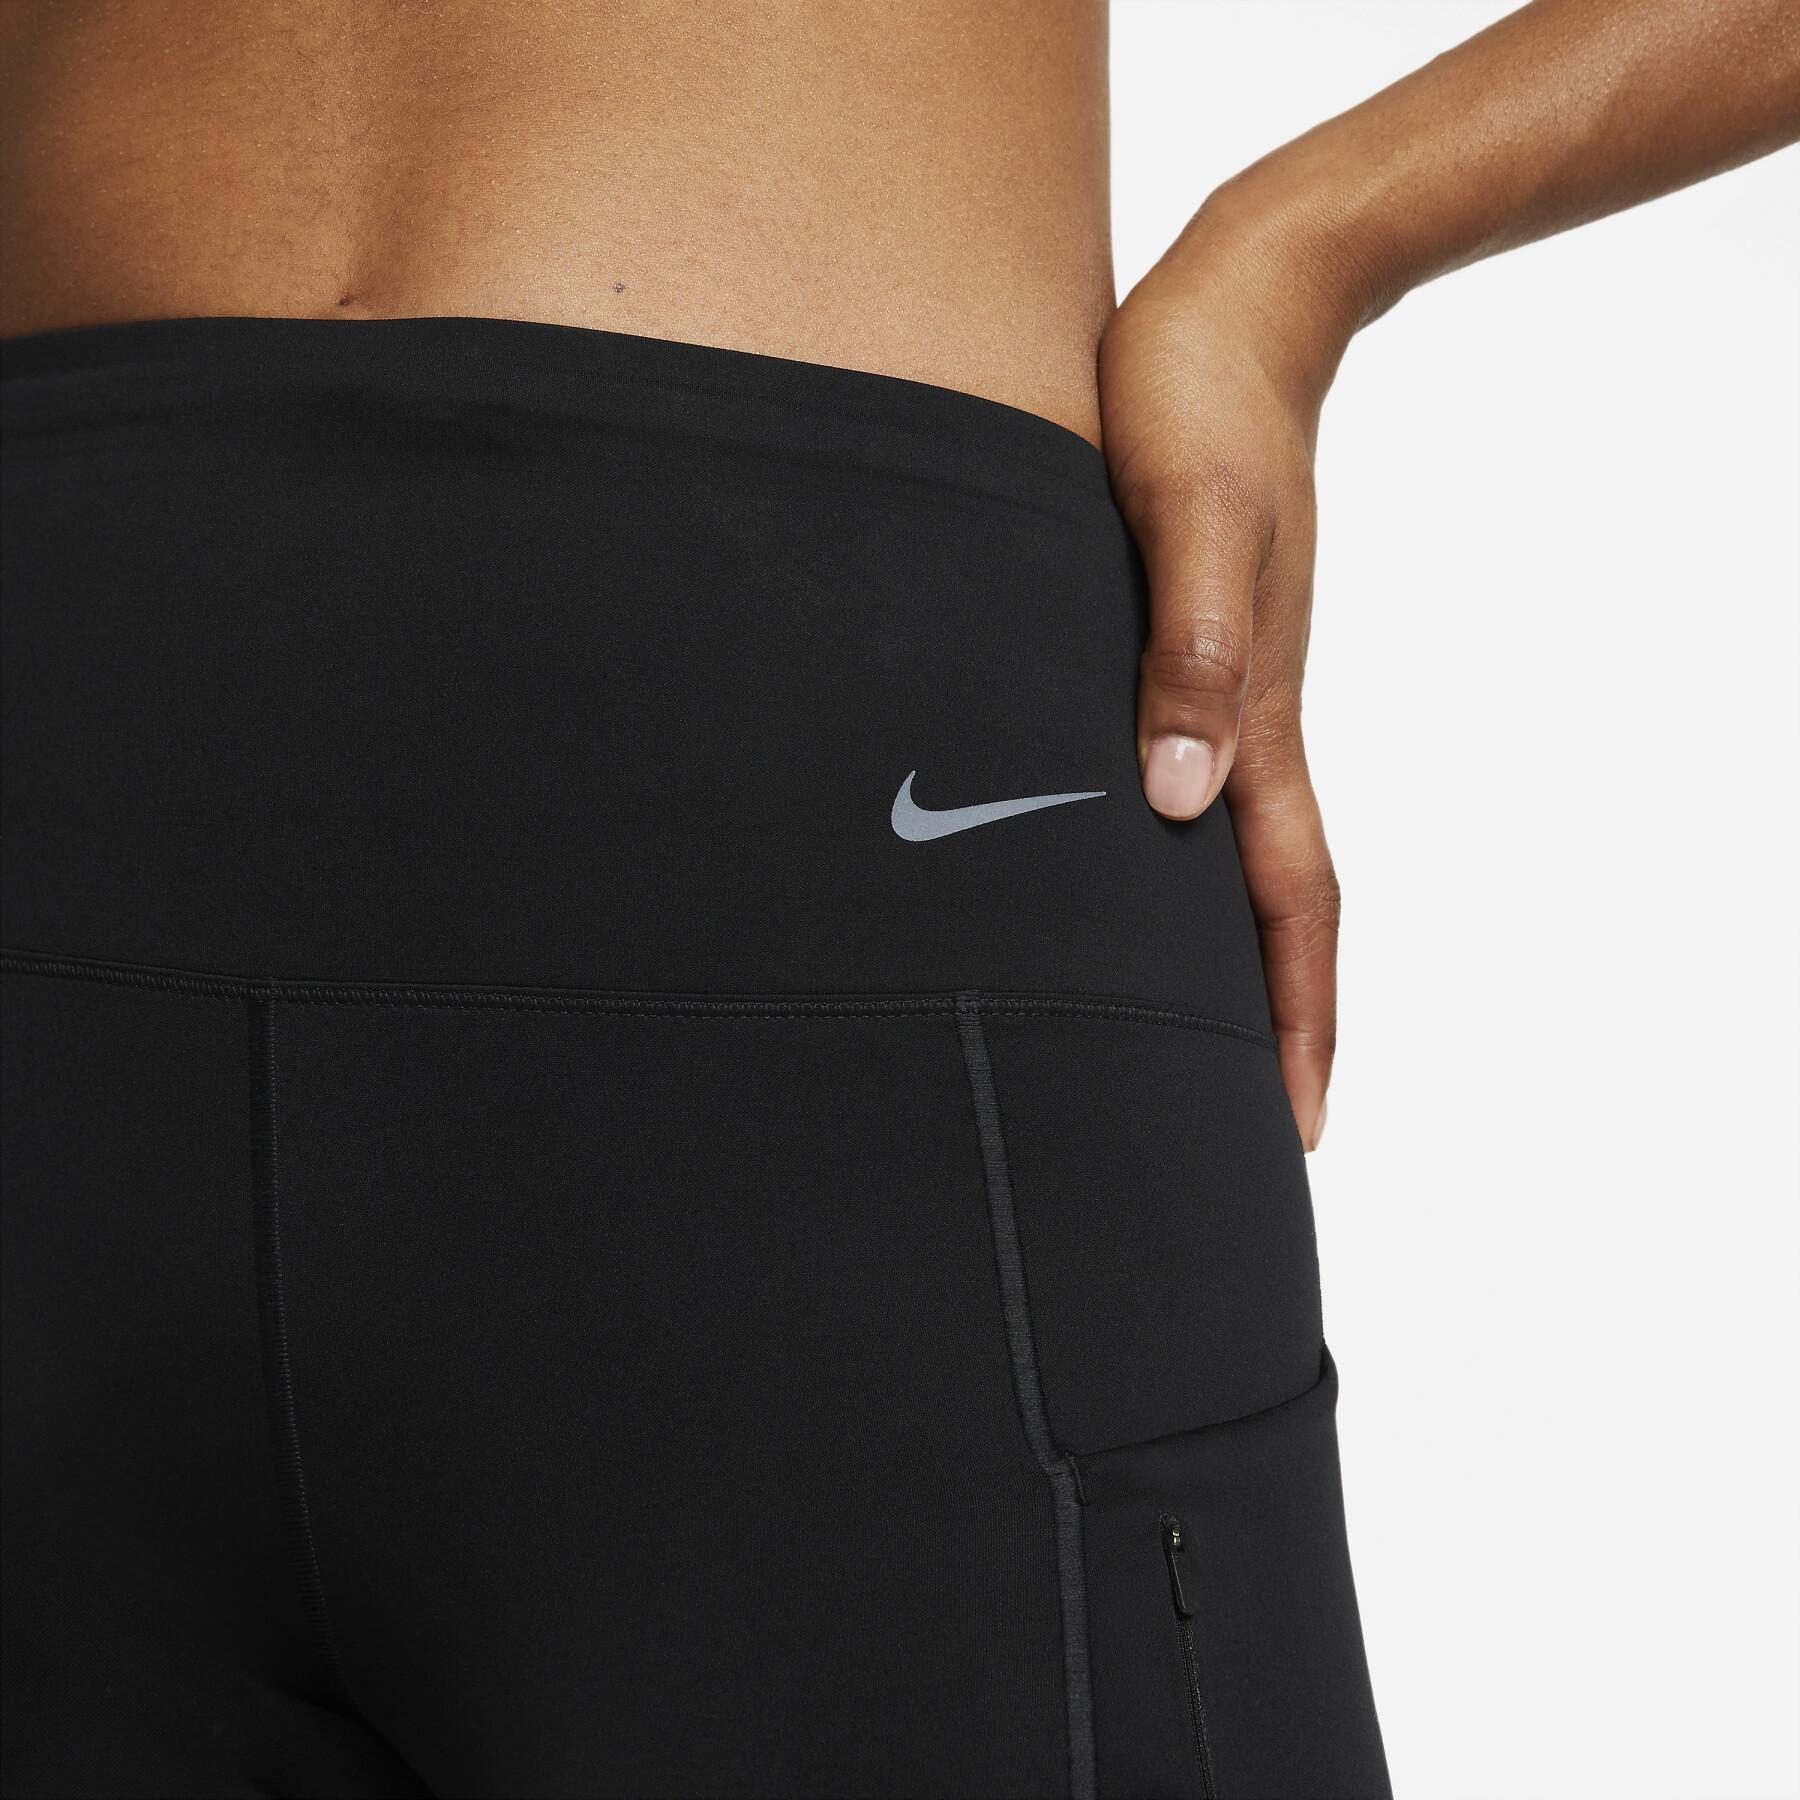 Calções de cintura alta para mulheres Nike Dri-FIT Go 8 "